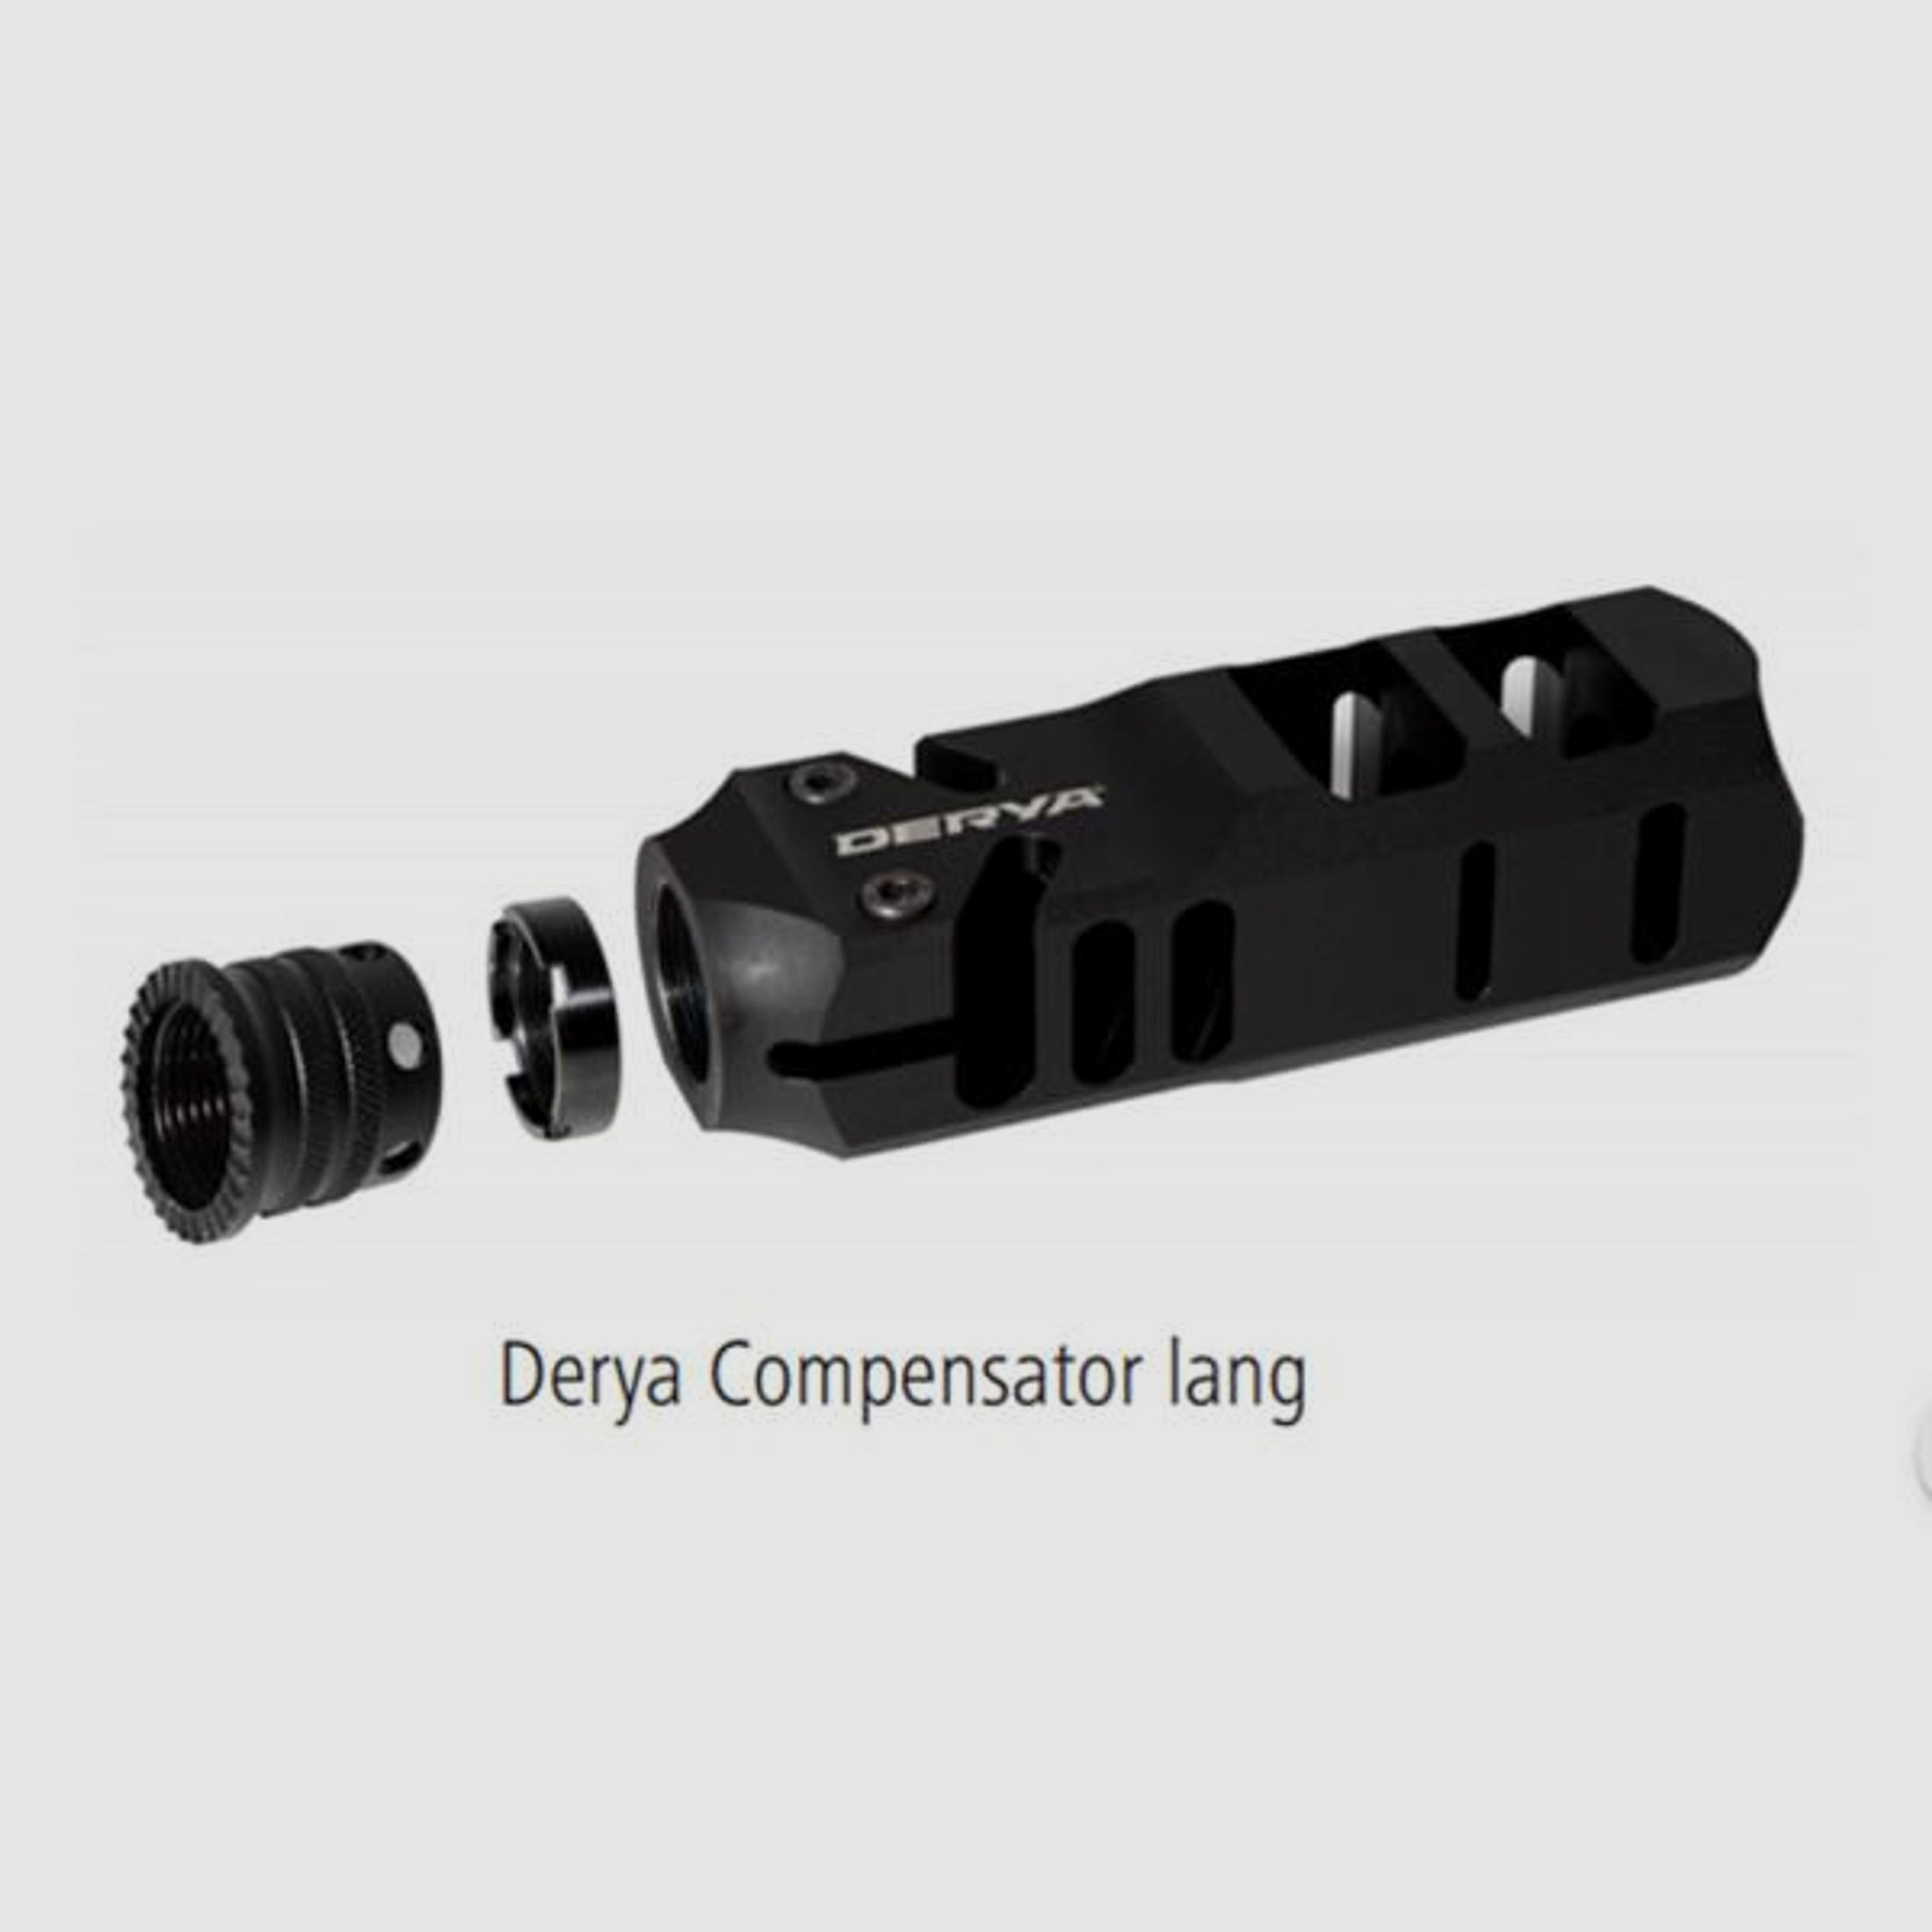 DERYA Arms Tuning/Ersatzteil f. Langwaffe Kompensator LANG f. MK12  (13,5 cm lang)